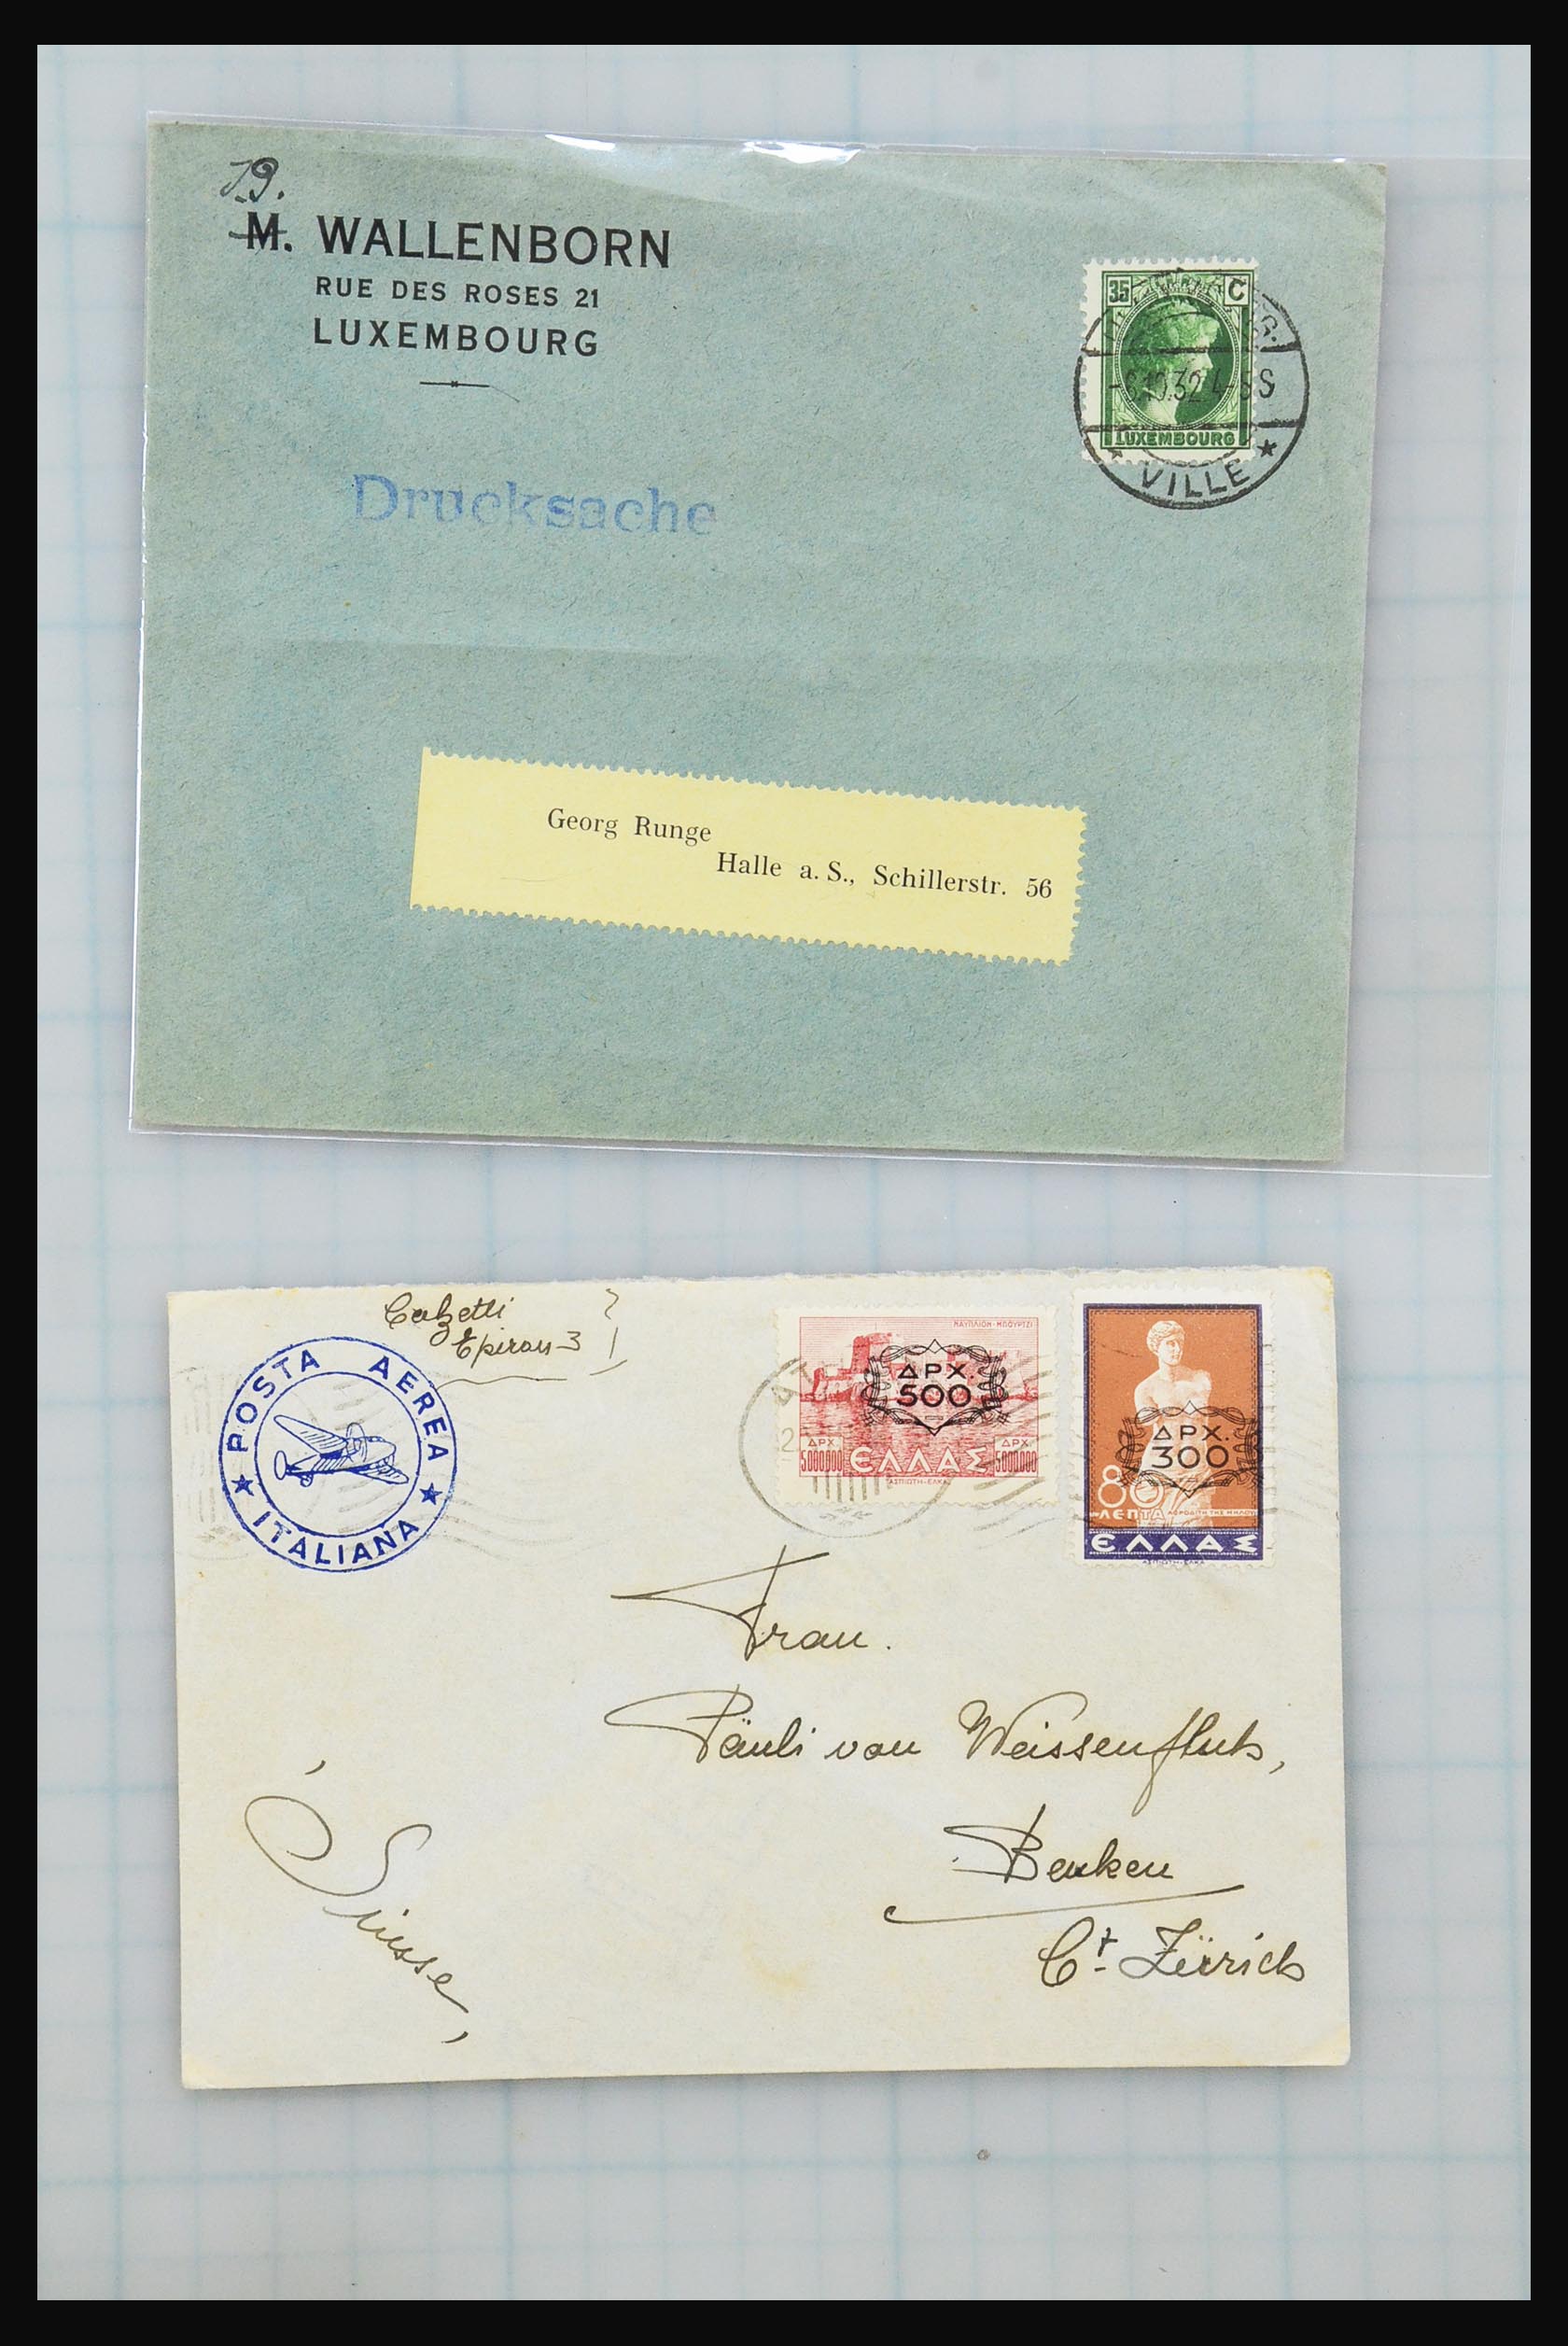 31358 091 - 31358 Portugal/Luxemburg/Griekenland brieven 1880-1960.